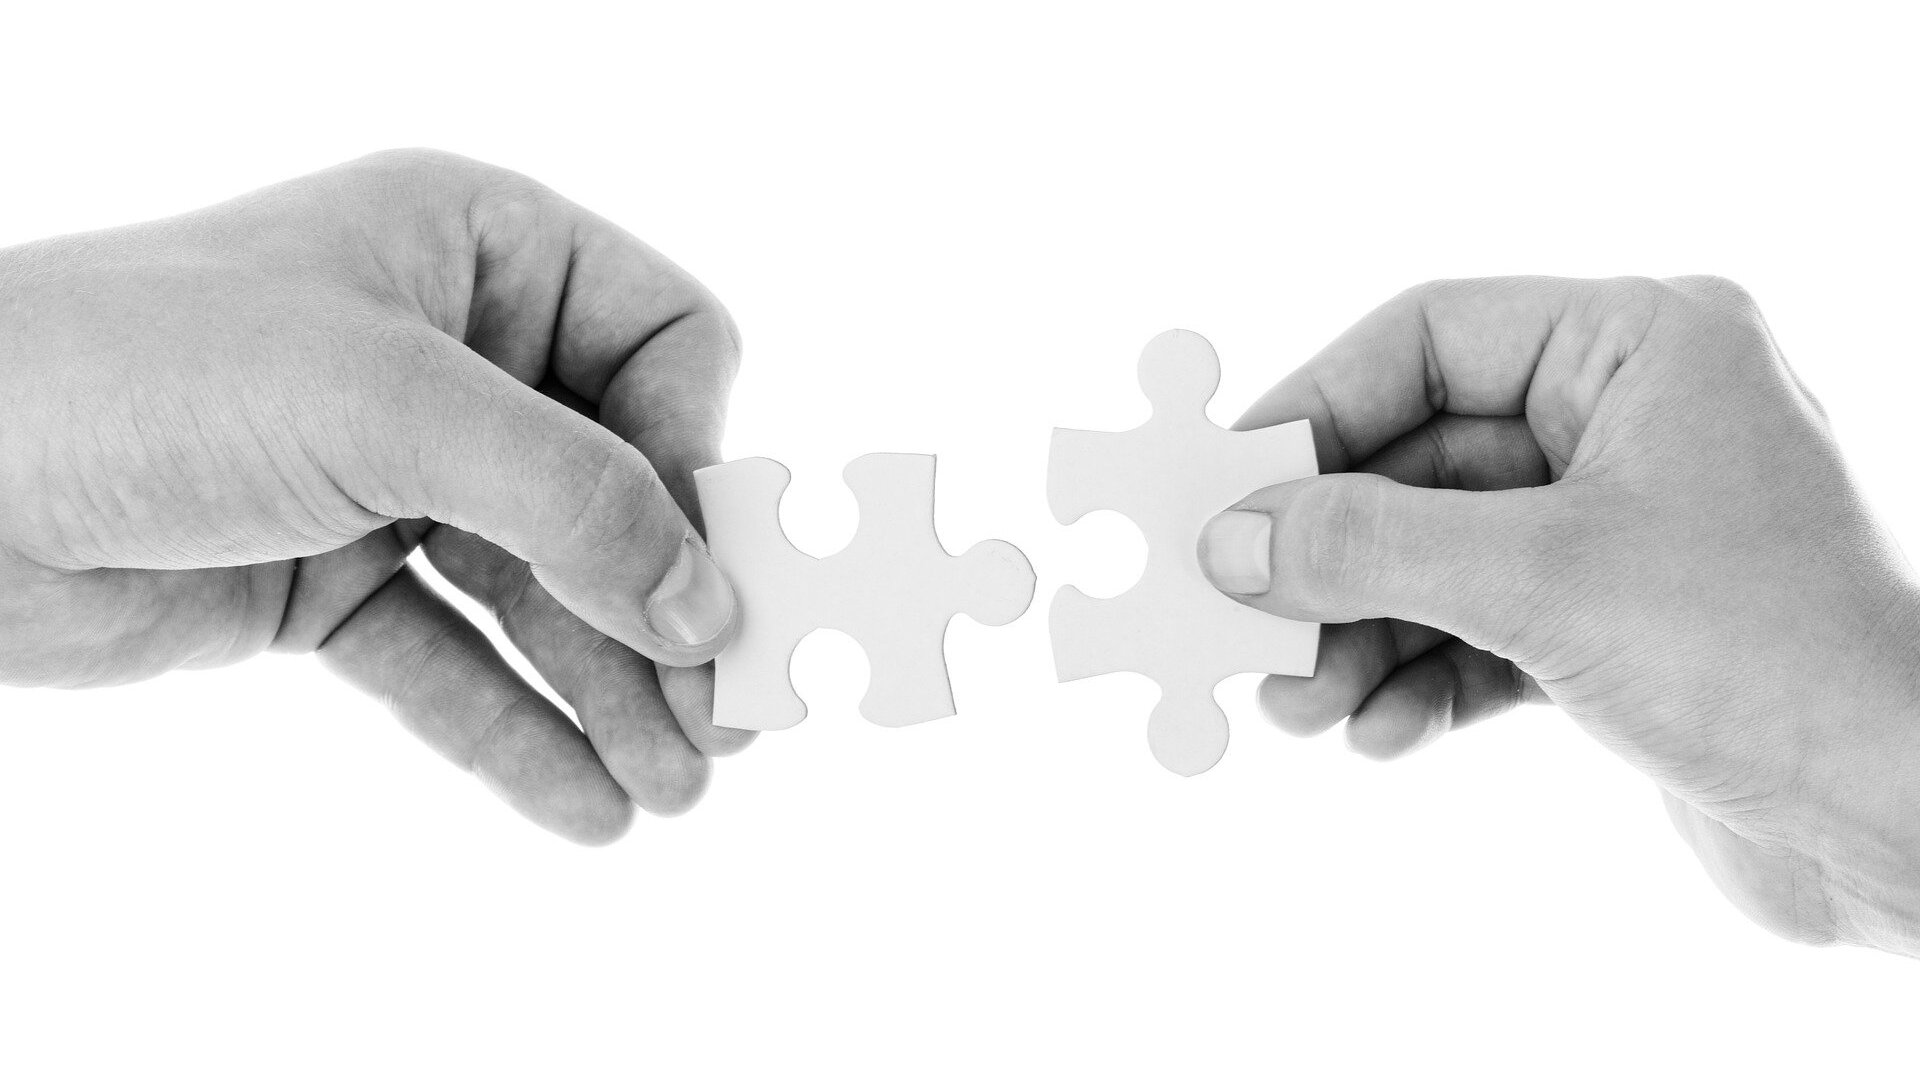 Zwei Hände fügen zwei Puzzleteile zusammen / Two hands putting two pieces of a puzzle together